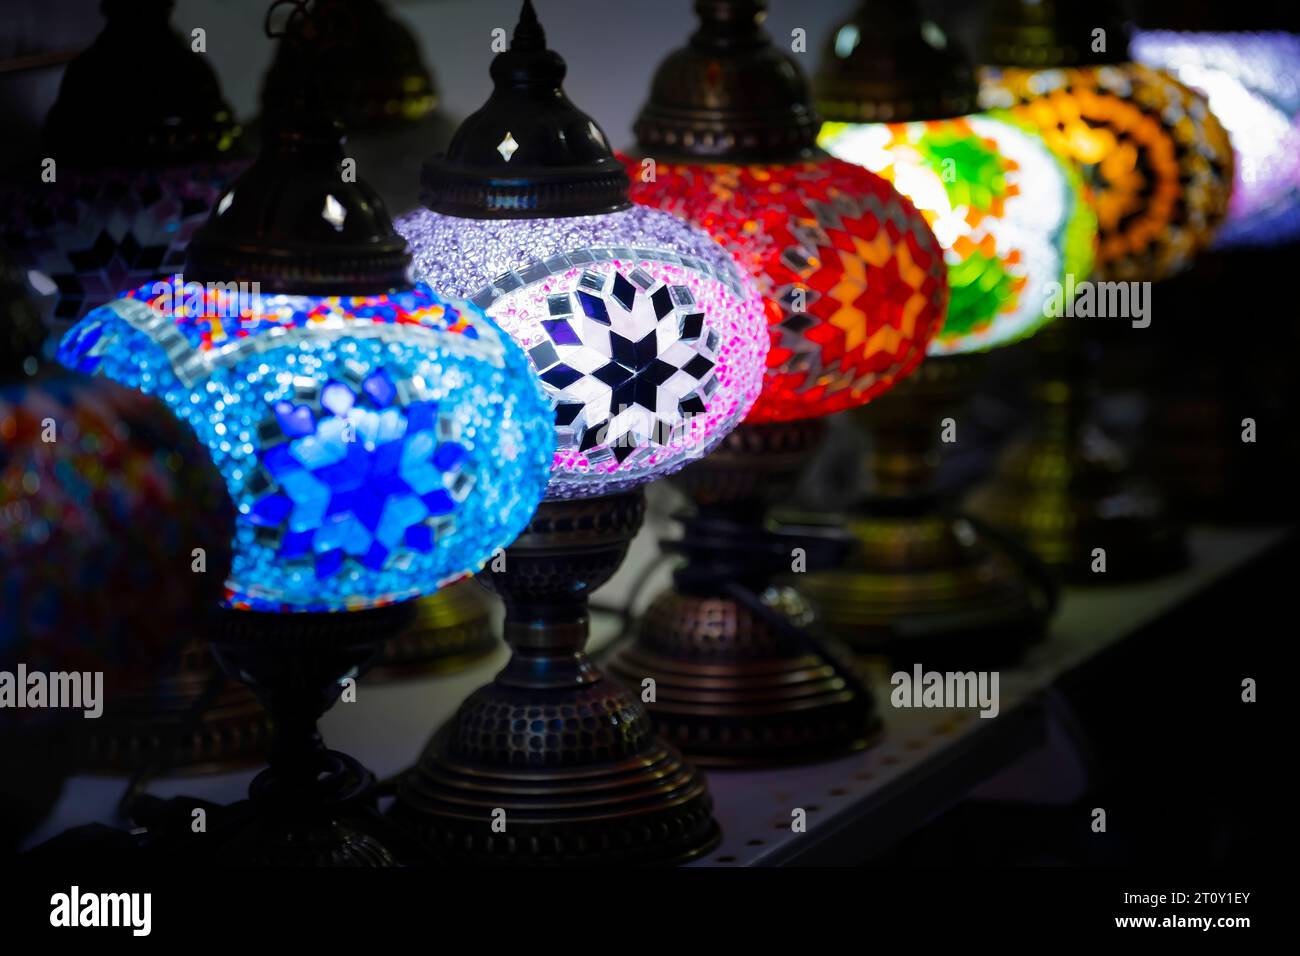 Perspektivische Ansicht eines typischen Buntglasleuchters der Basare von istanbul, türkei, selektiver Fokus, kristallfarbige Lampen, Diagonale des Lichts Stockfoto